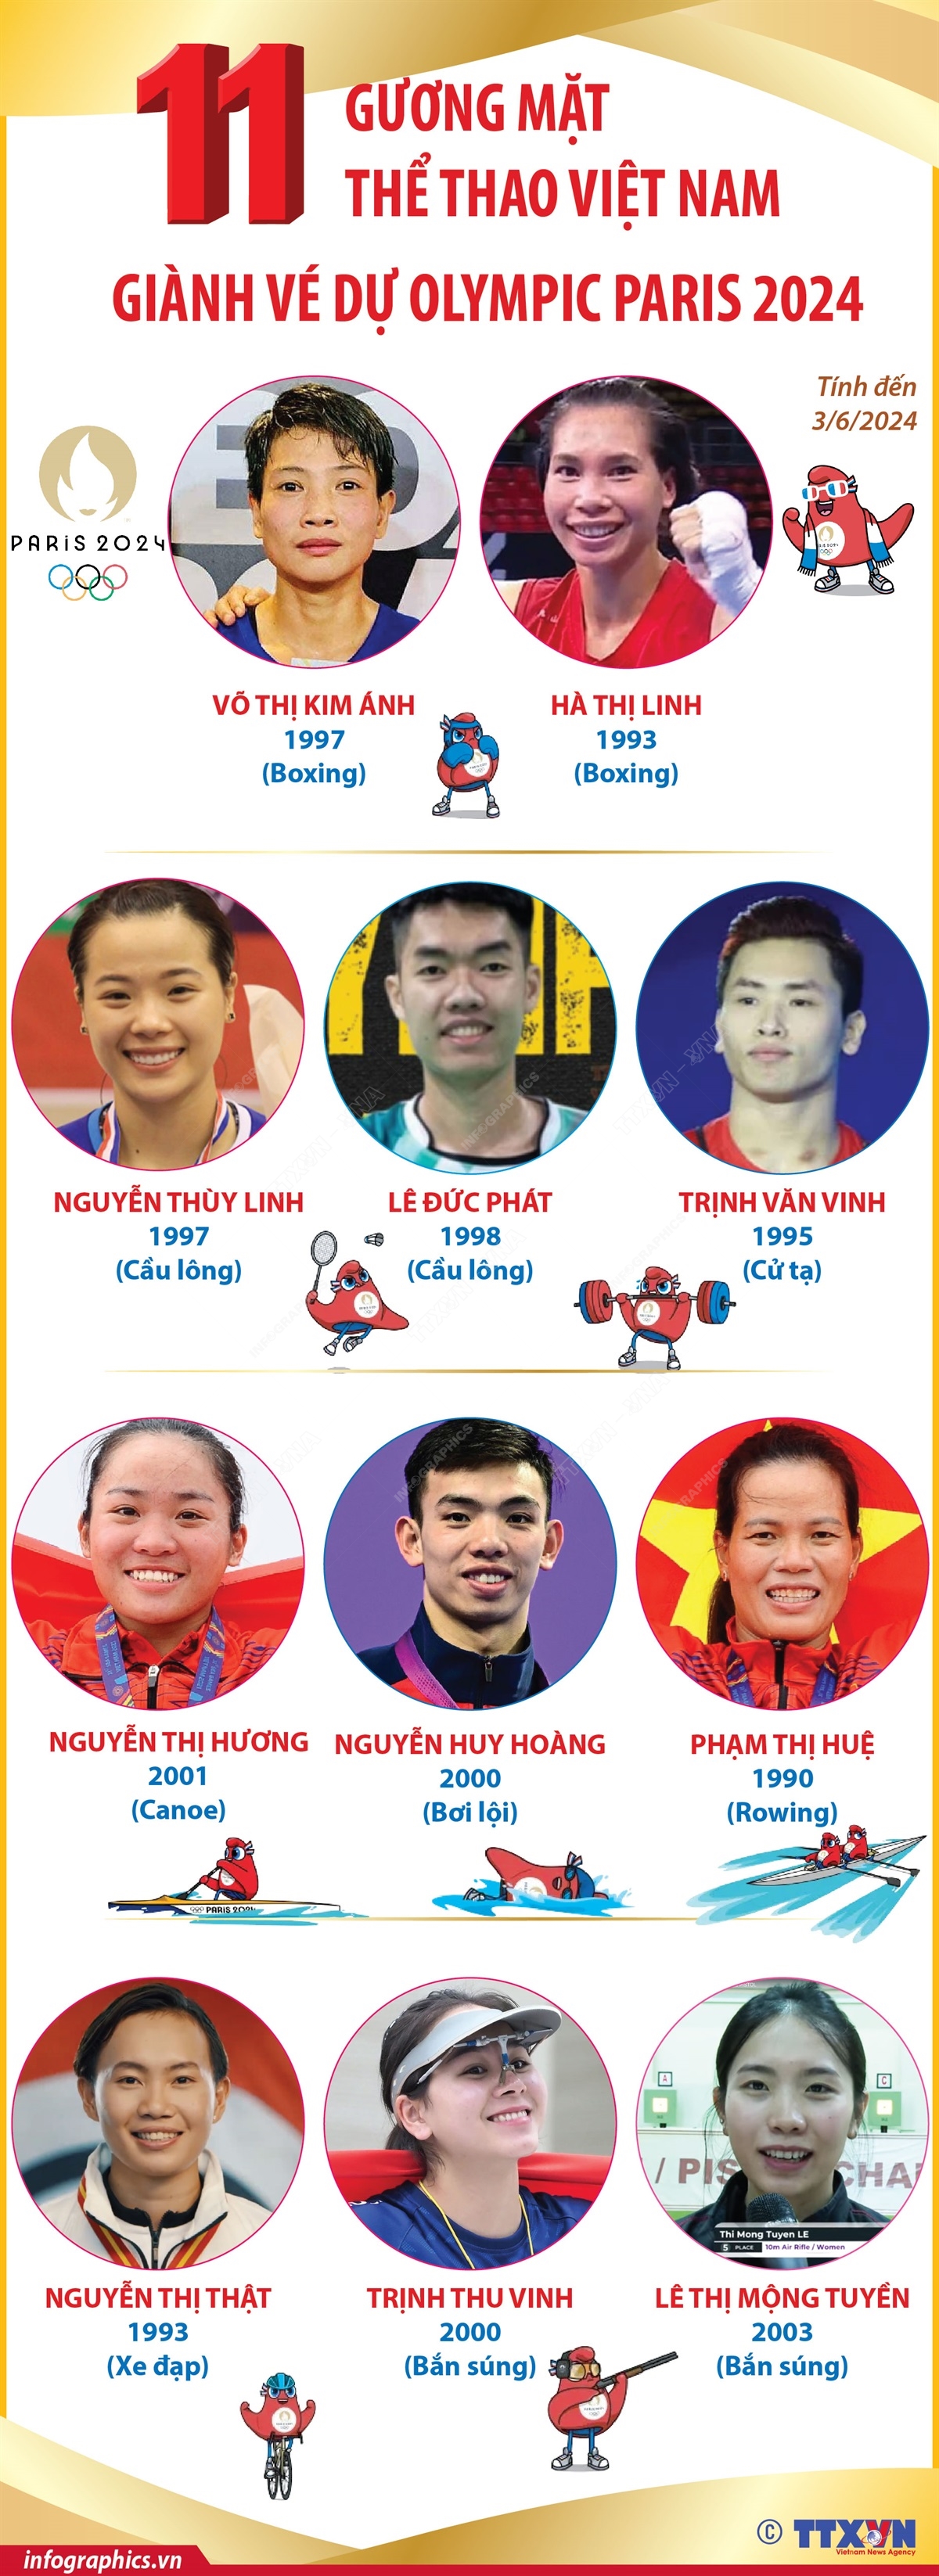 11 gương mặt thể thao Việt Nam giành vé dự Olympic Paris 2024 (tính đến 3/6/2024)- Ảnh 1.